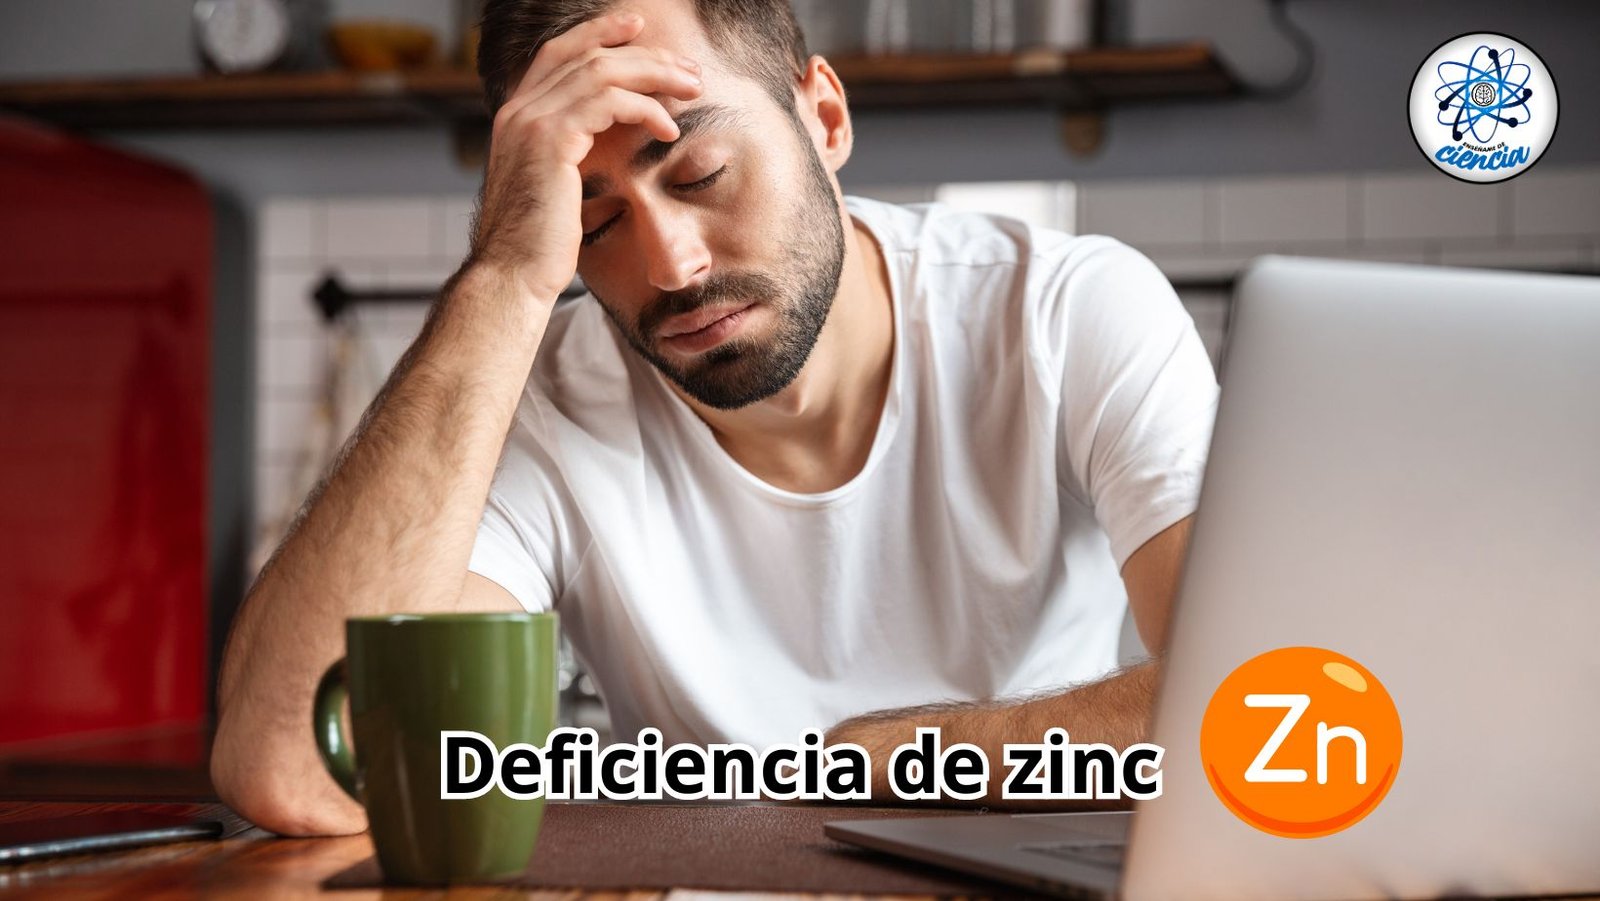 Síntomas reveladores de deficiencia de zinc: guía esencial para su detección y tratamiento